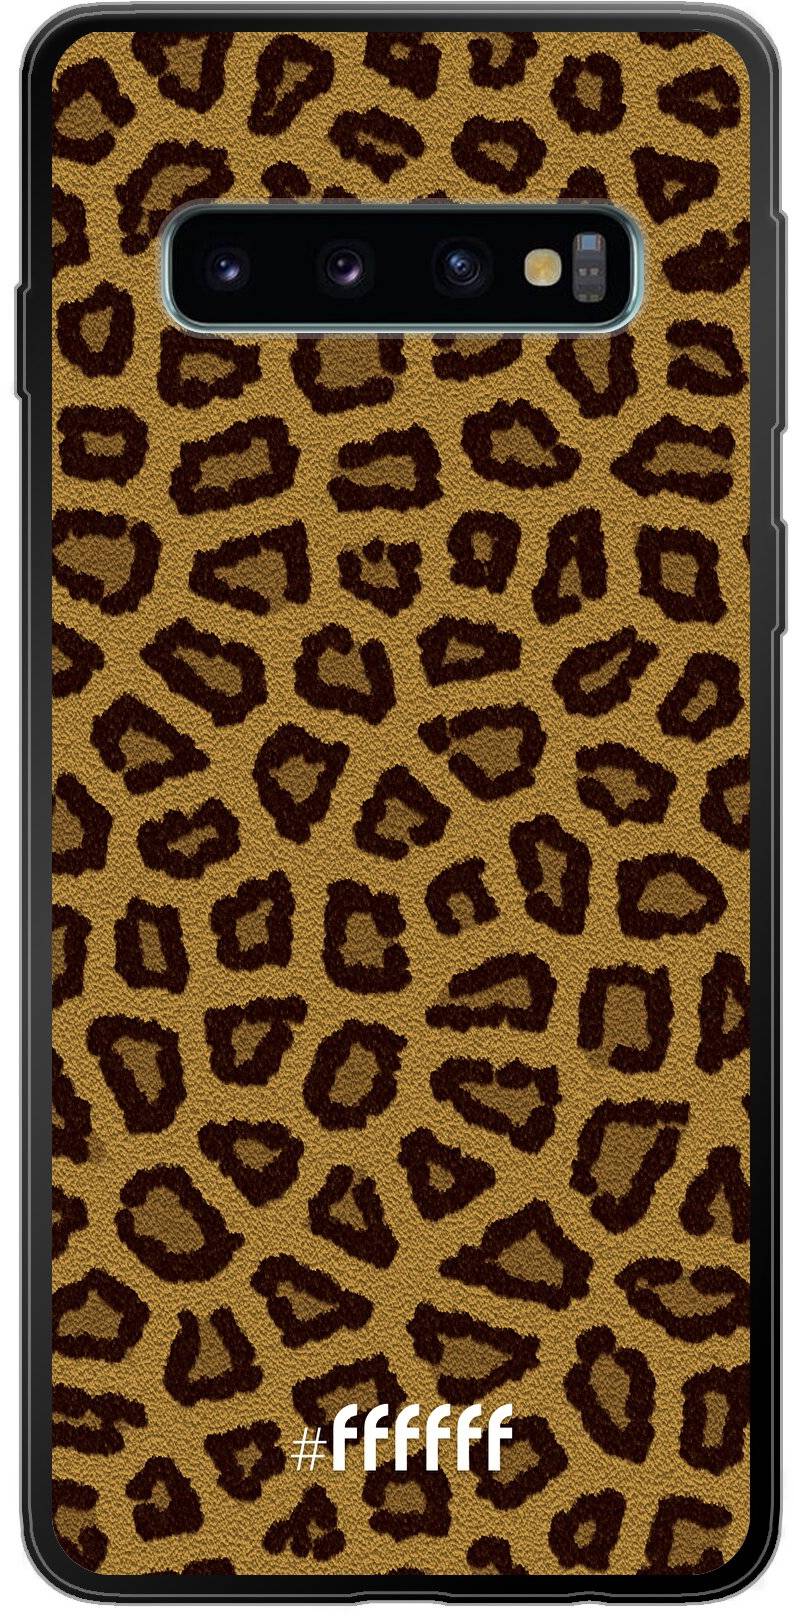 Leopard Print Galaxy S10